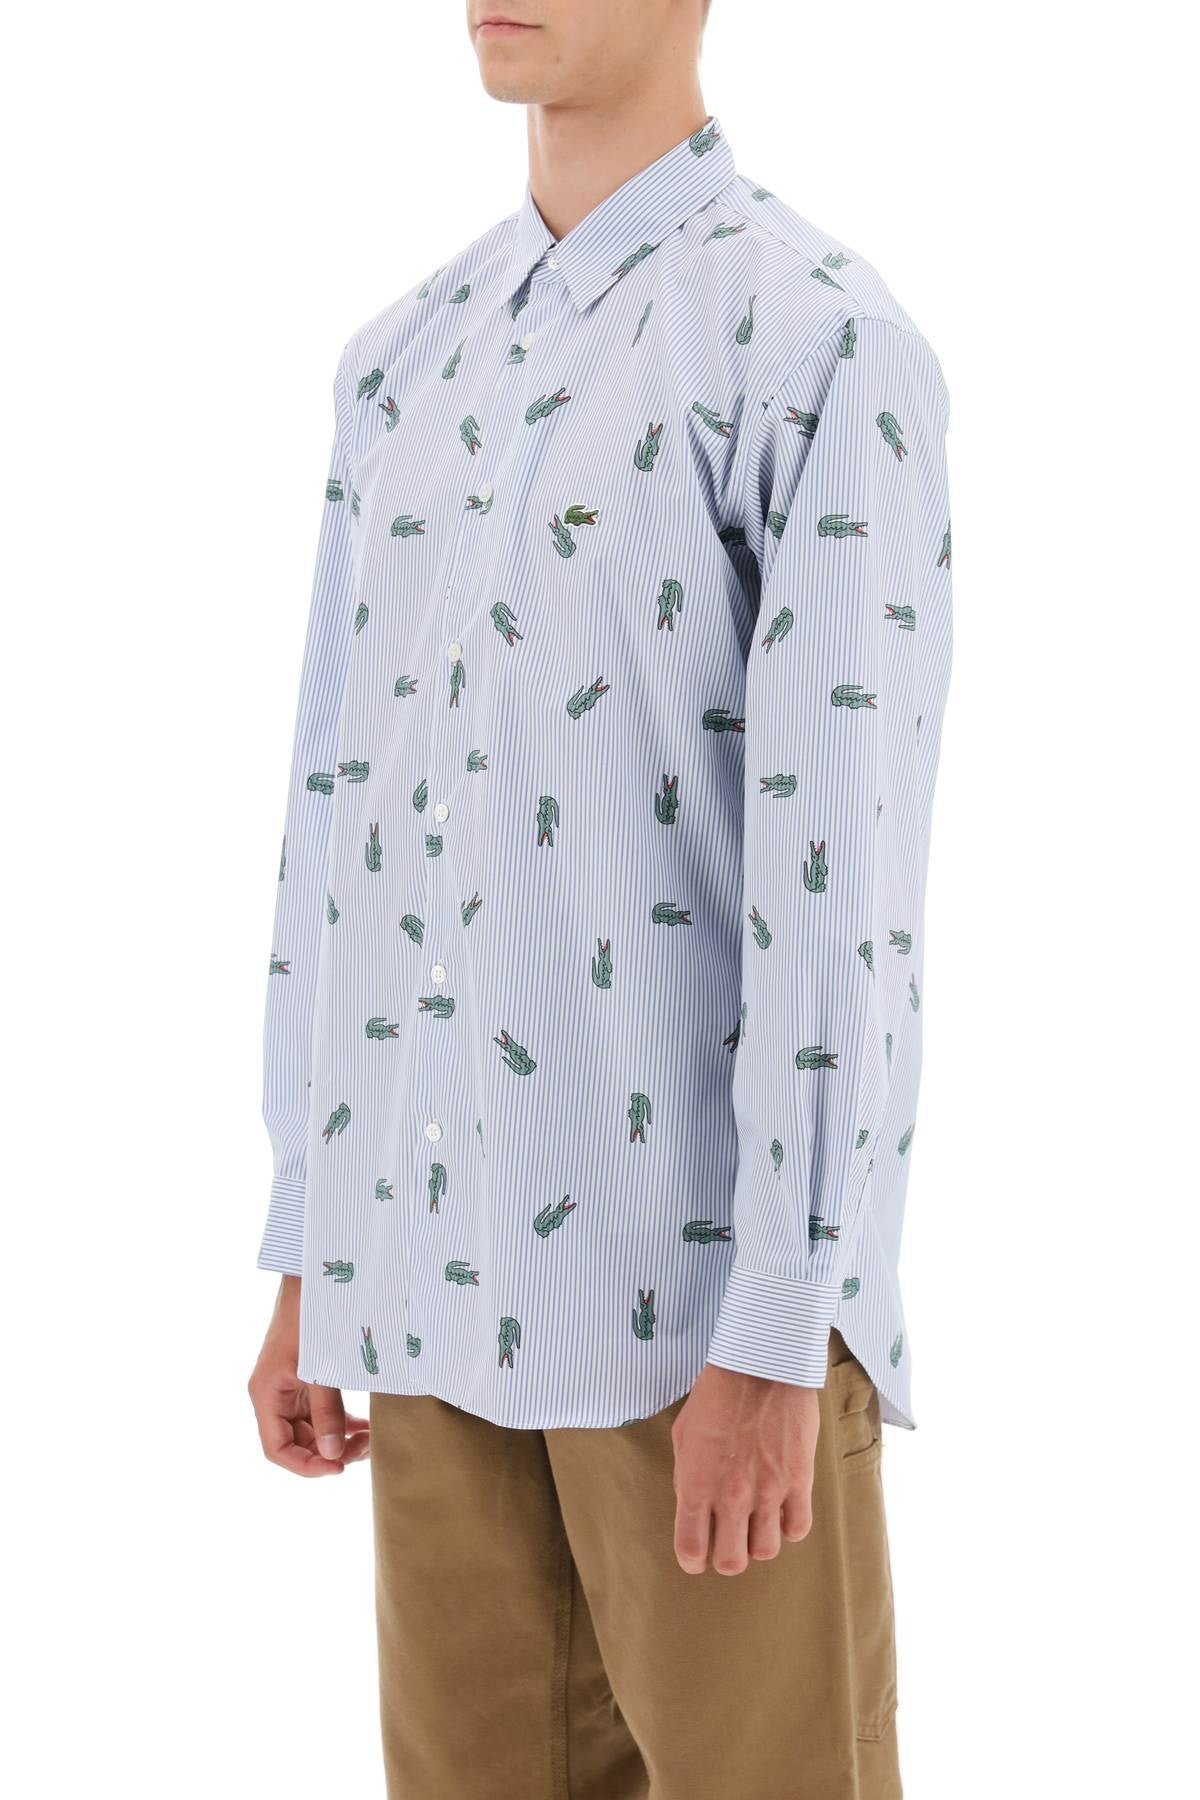 Comme des garcons shirt x lacoste oxford shirt with crocodile motif-3